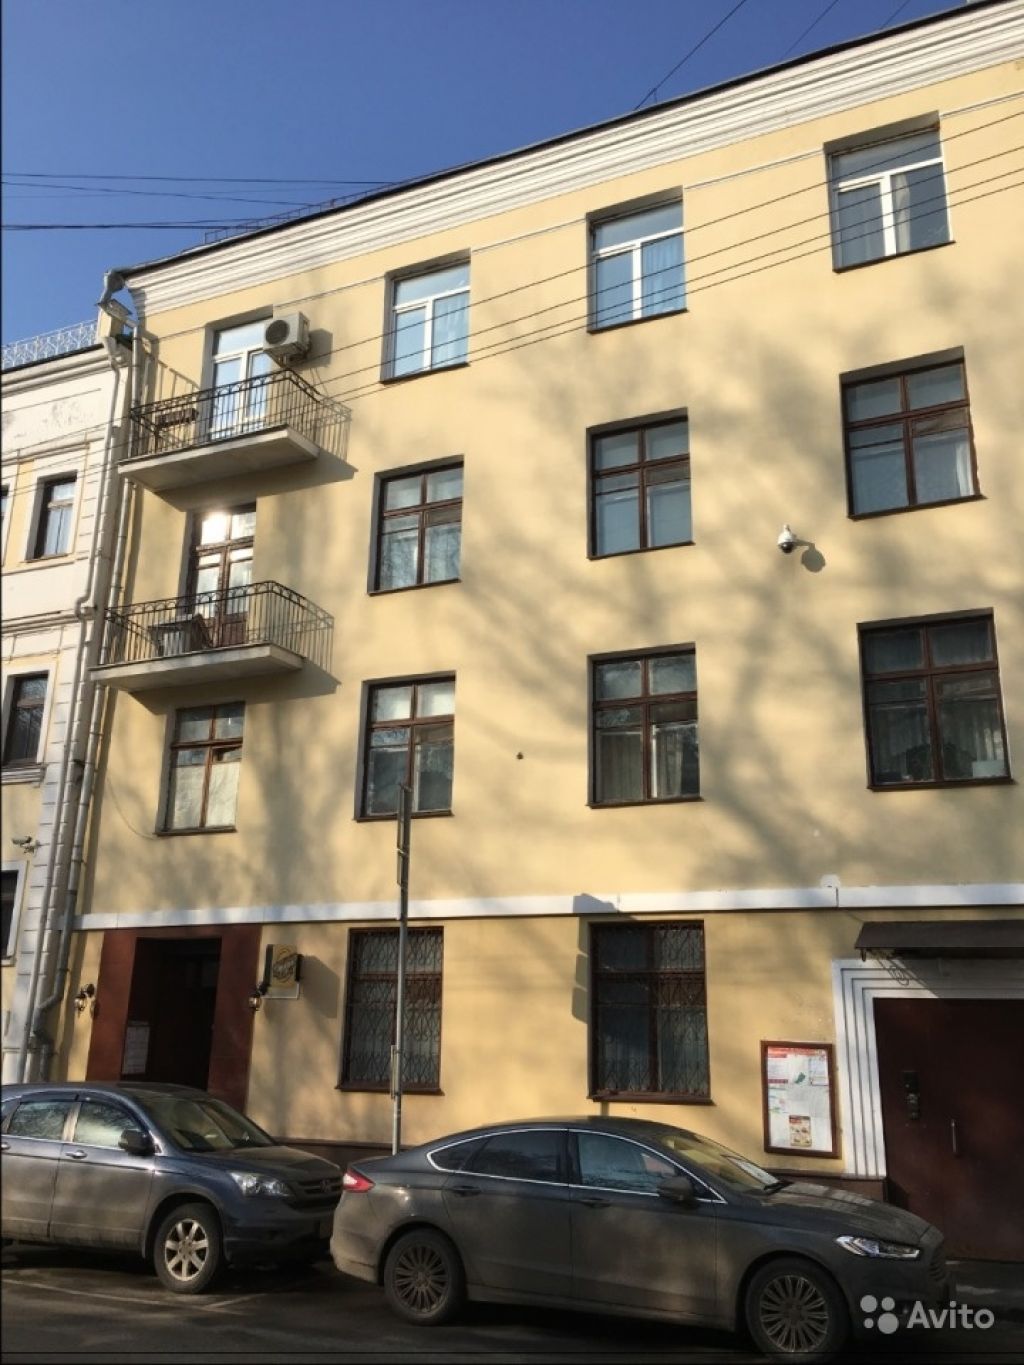 Продам квартиру 2-к квартира 55 м² на 3 этаже 4-этажного кирпичного дома в Москве. Фото 1